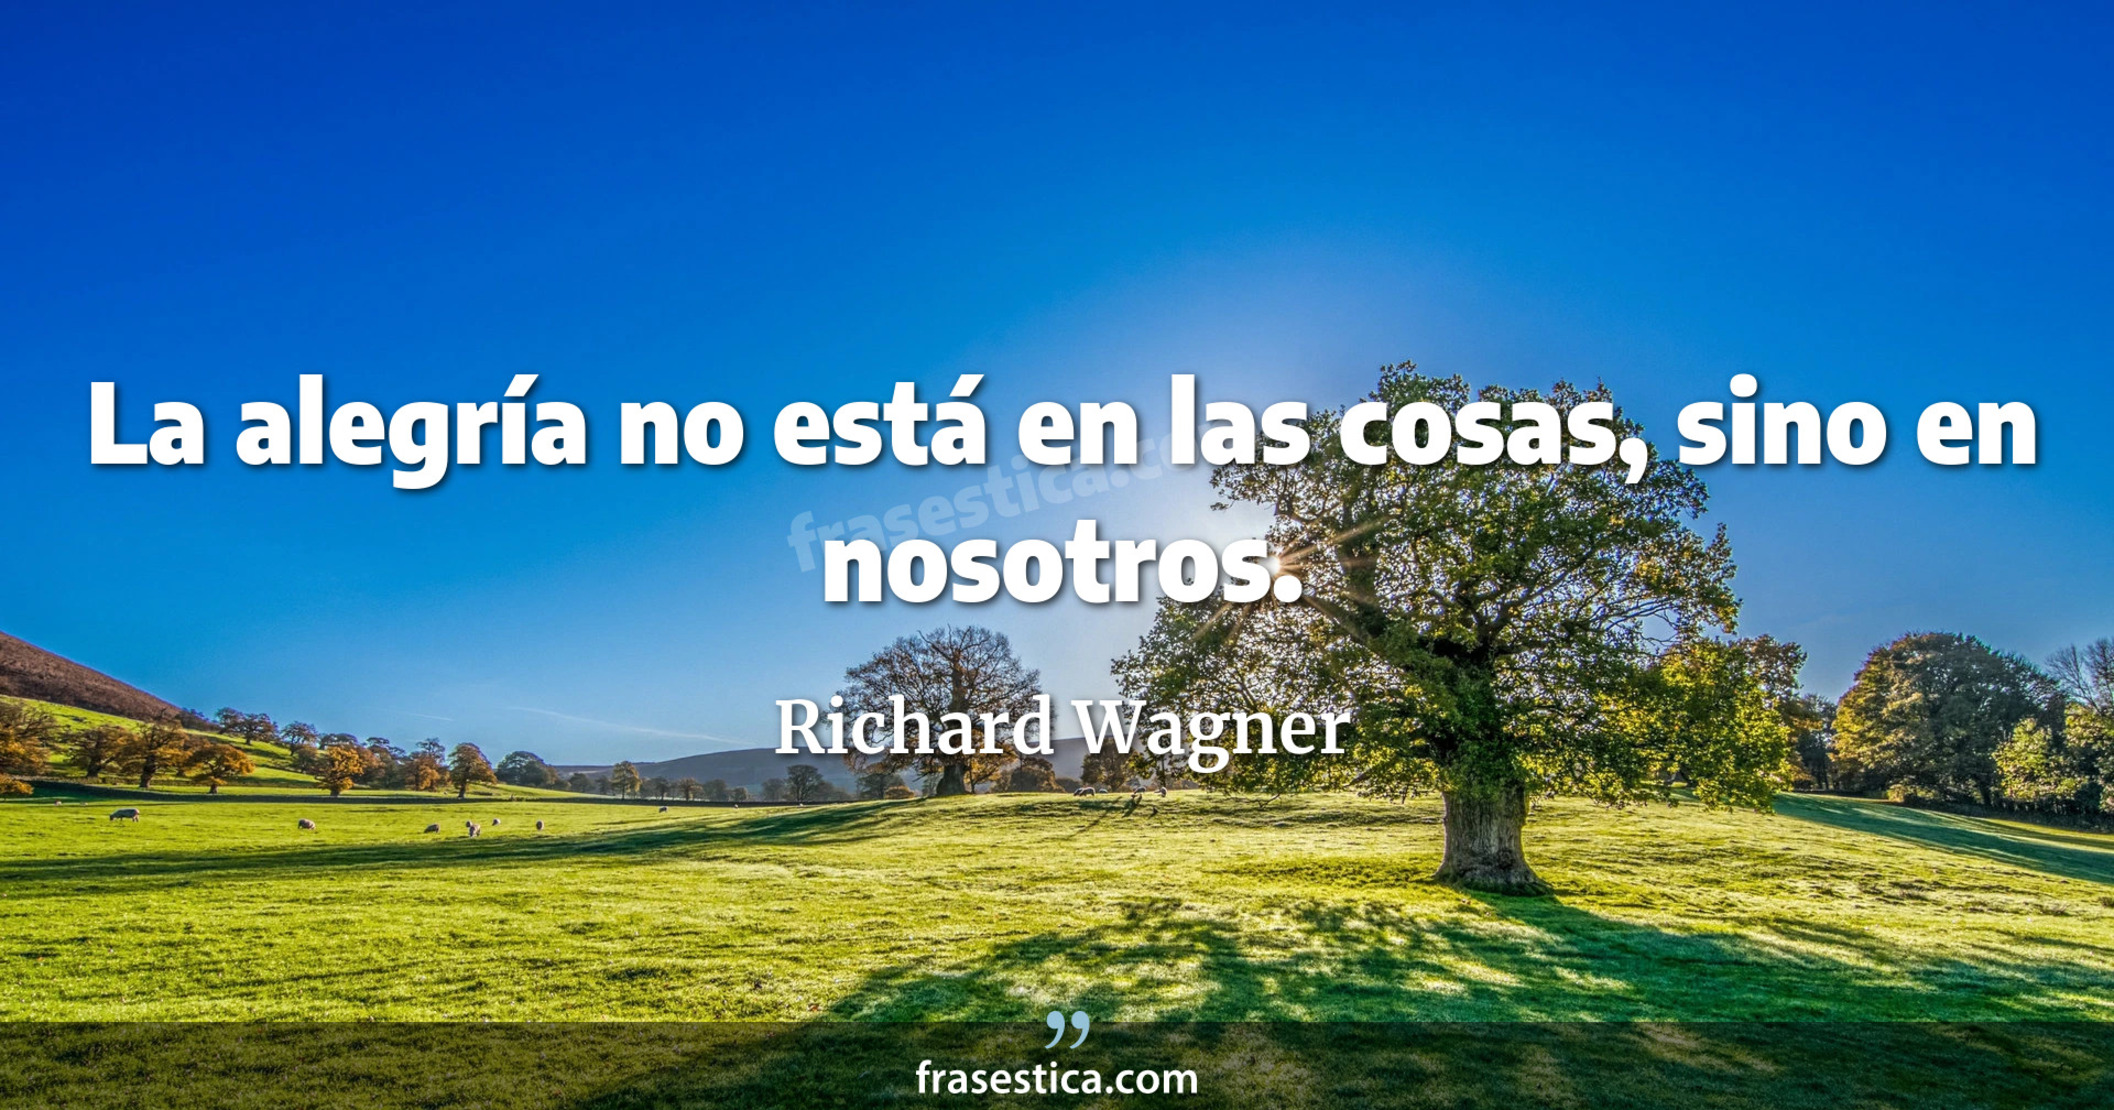 La alegría no está en las cosas, sino en nosotros. - Richard Wagner